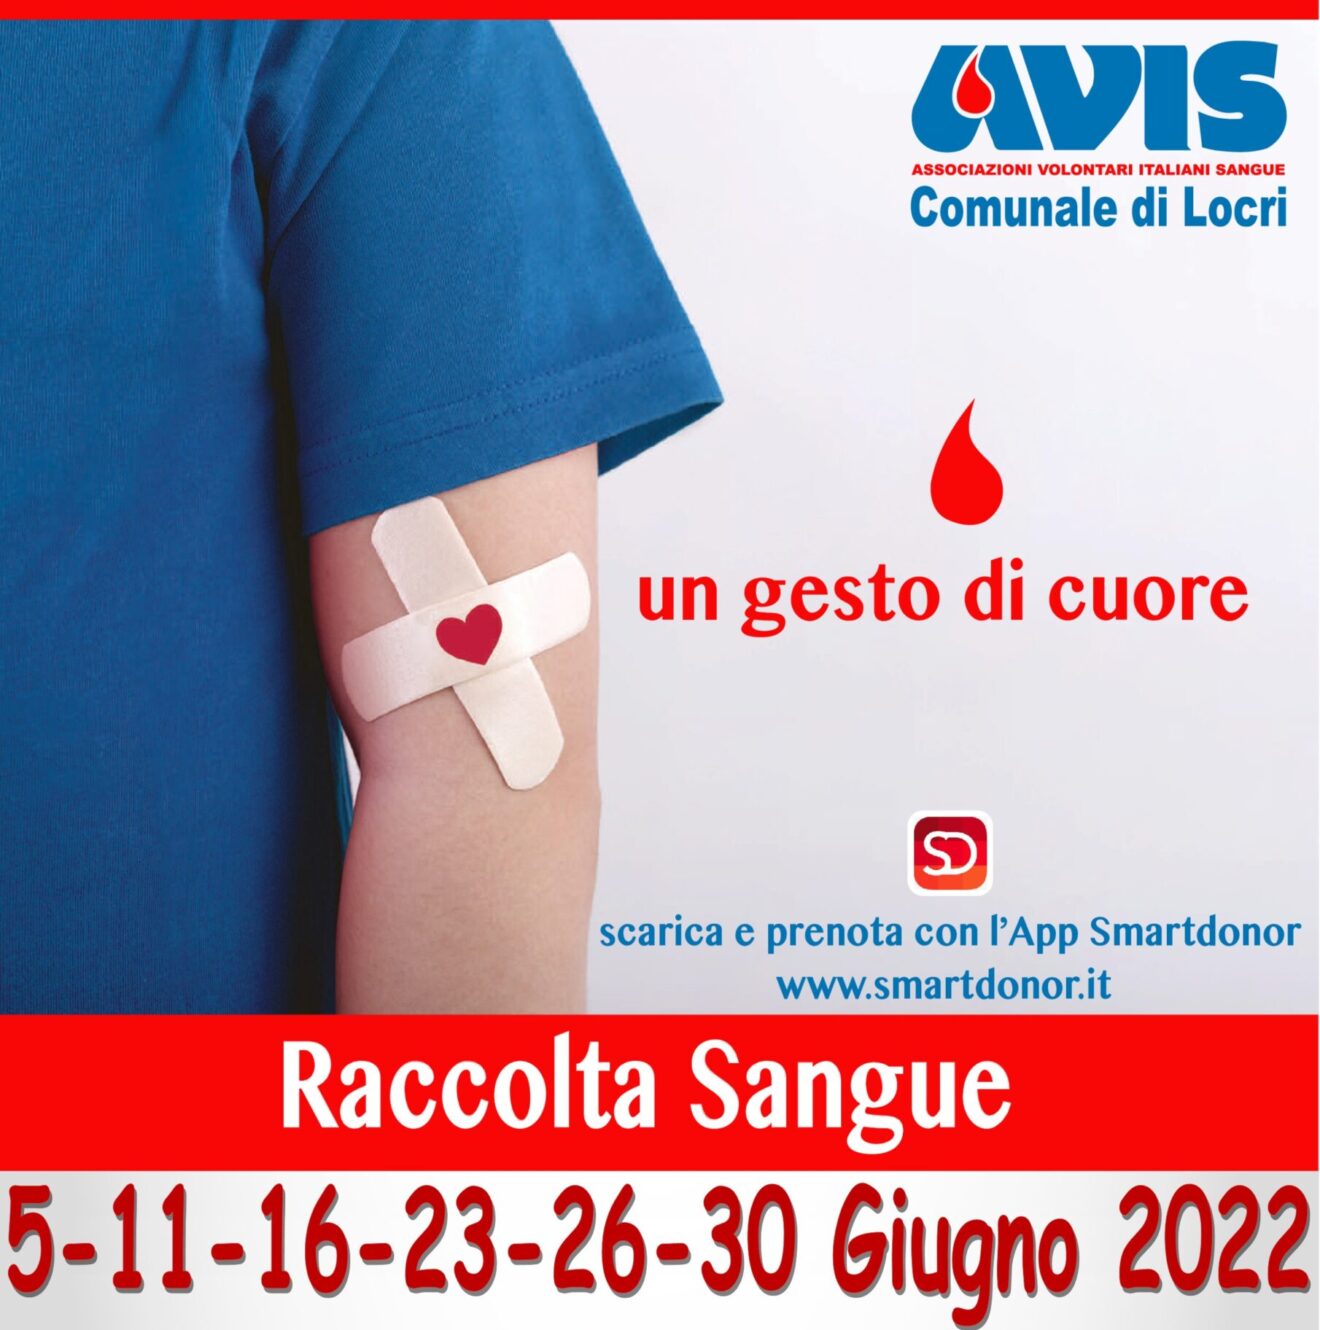 L’AVIS Comunale di Locri comunica le date delle raccolte di sangue per il mese di giugno 2022